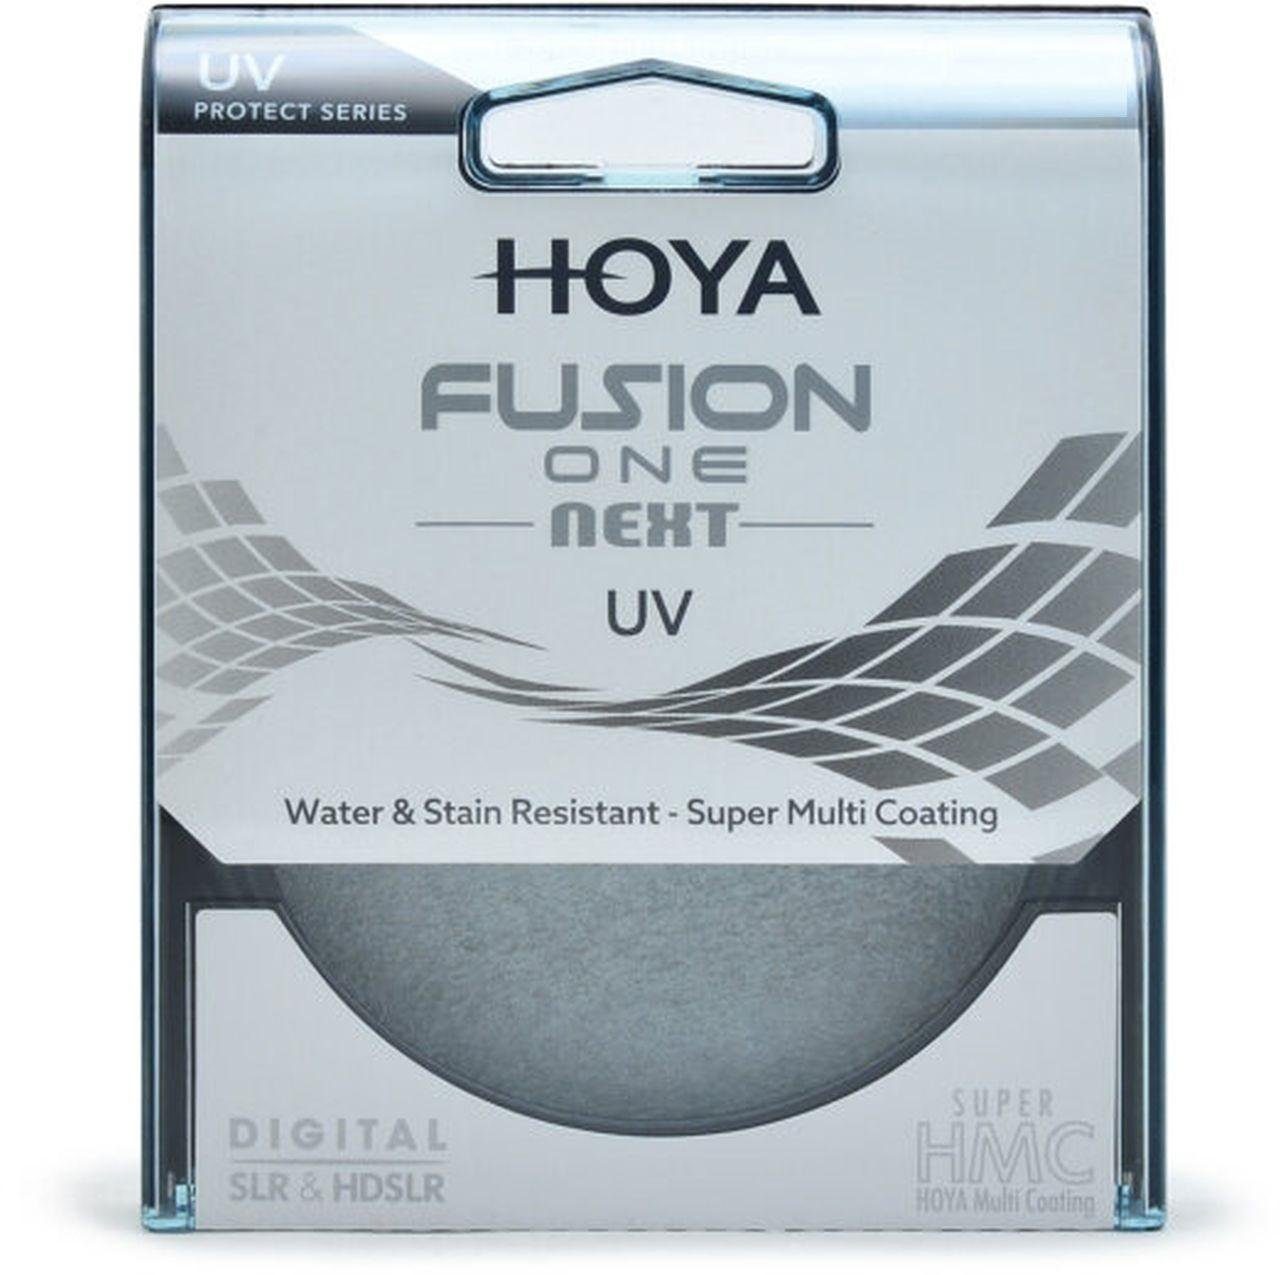 Objektivzubehör UV-Filter 62mm Hoya ONE Next Fusion